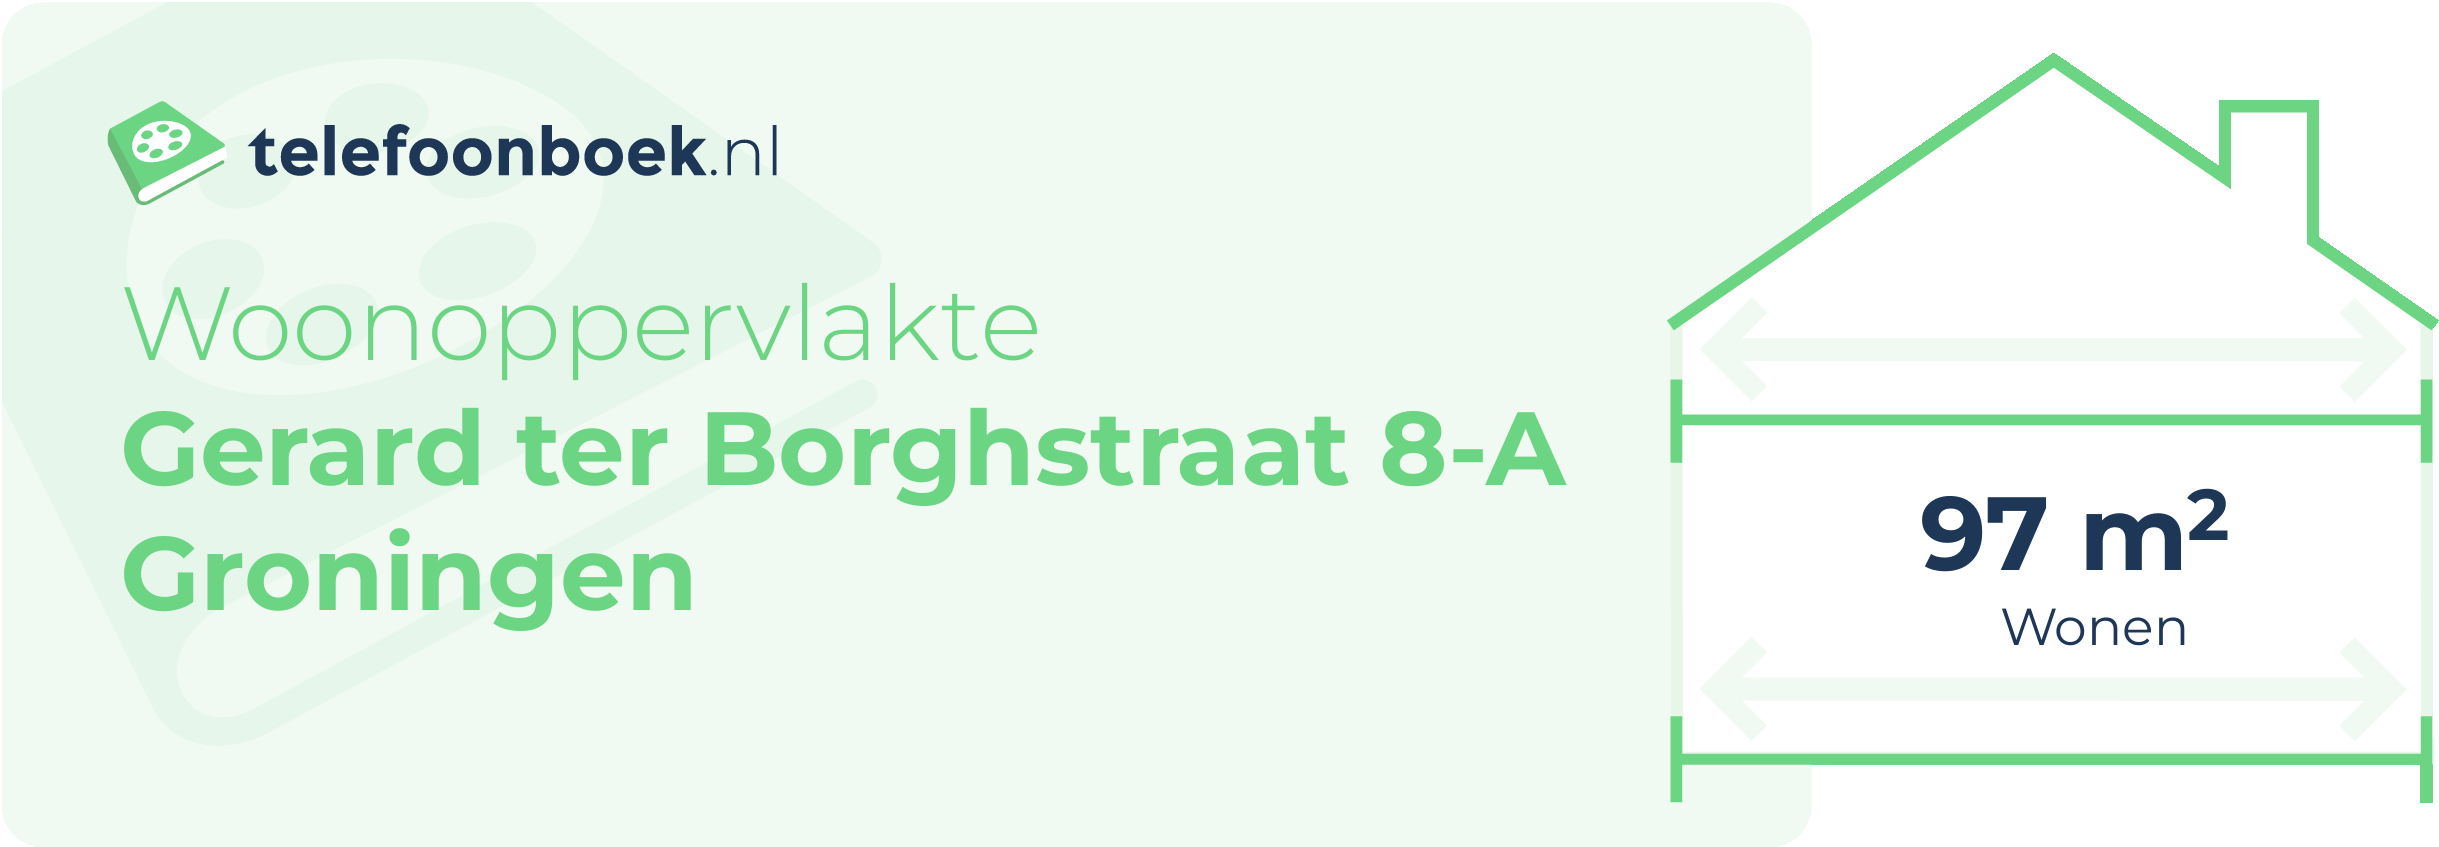 Woonoppervlakte Gerard Ter Borghstraat 8-A Groningen